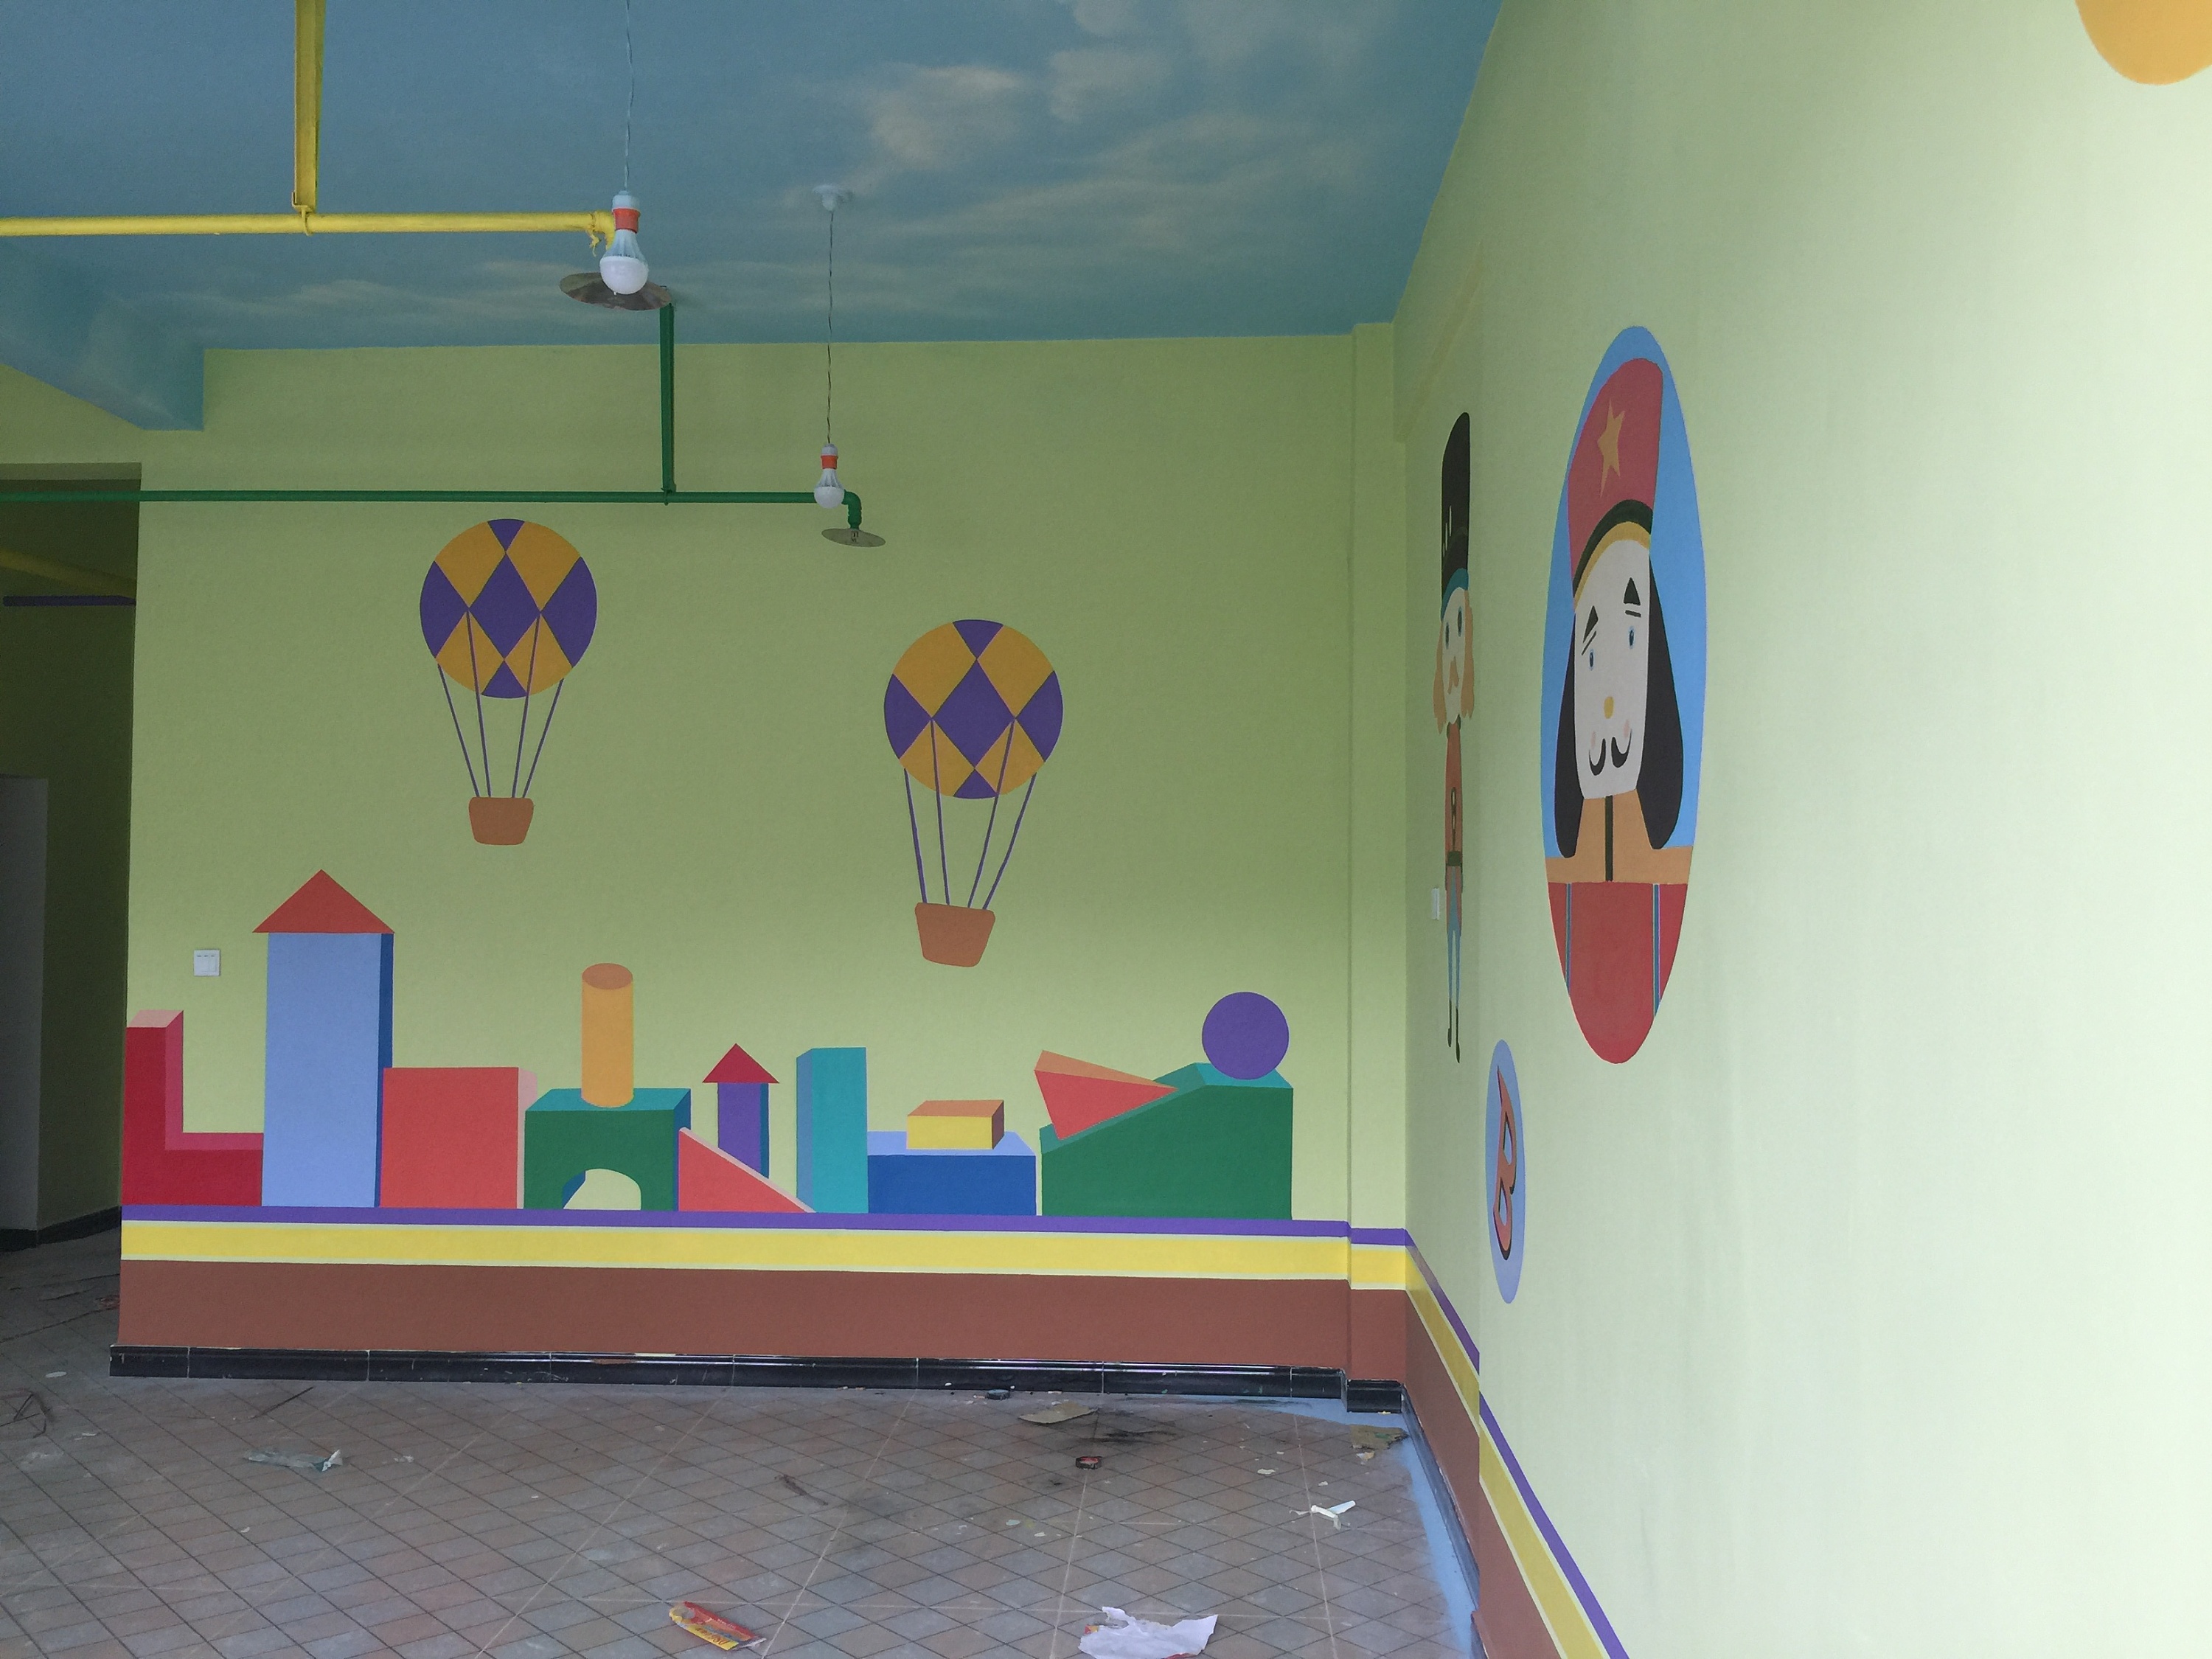 云南昆明幼儿园墙体彩绘手绘墙绘墙画—寻甸金源幼儿园